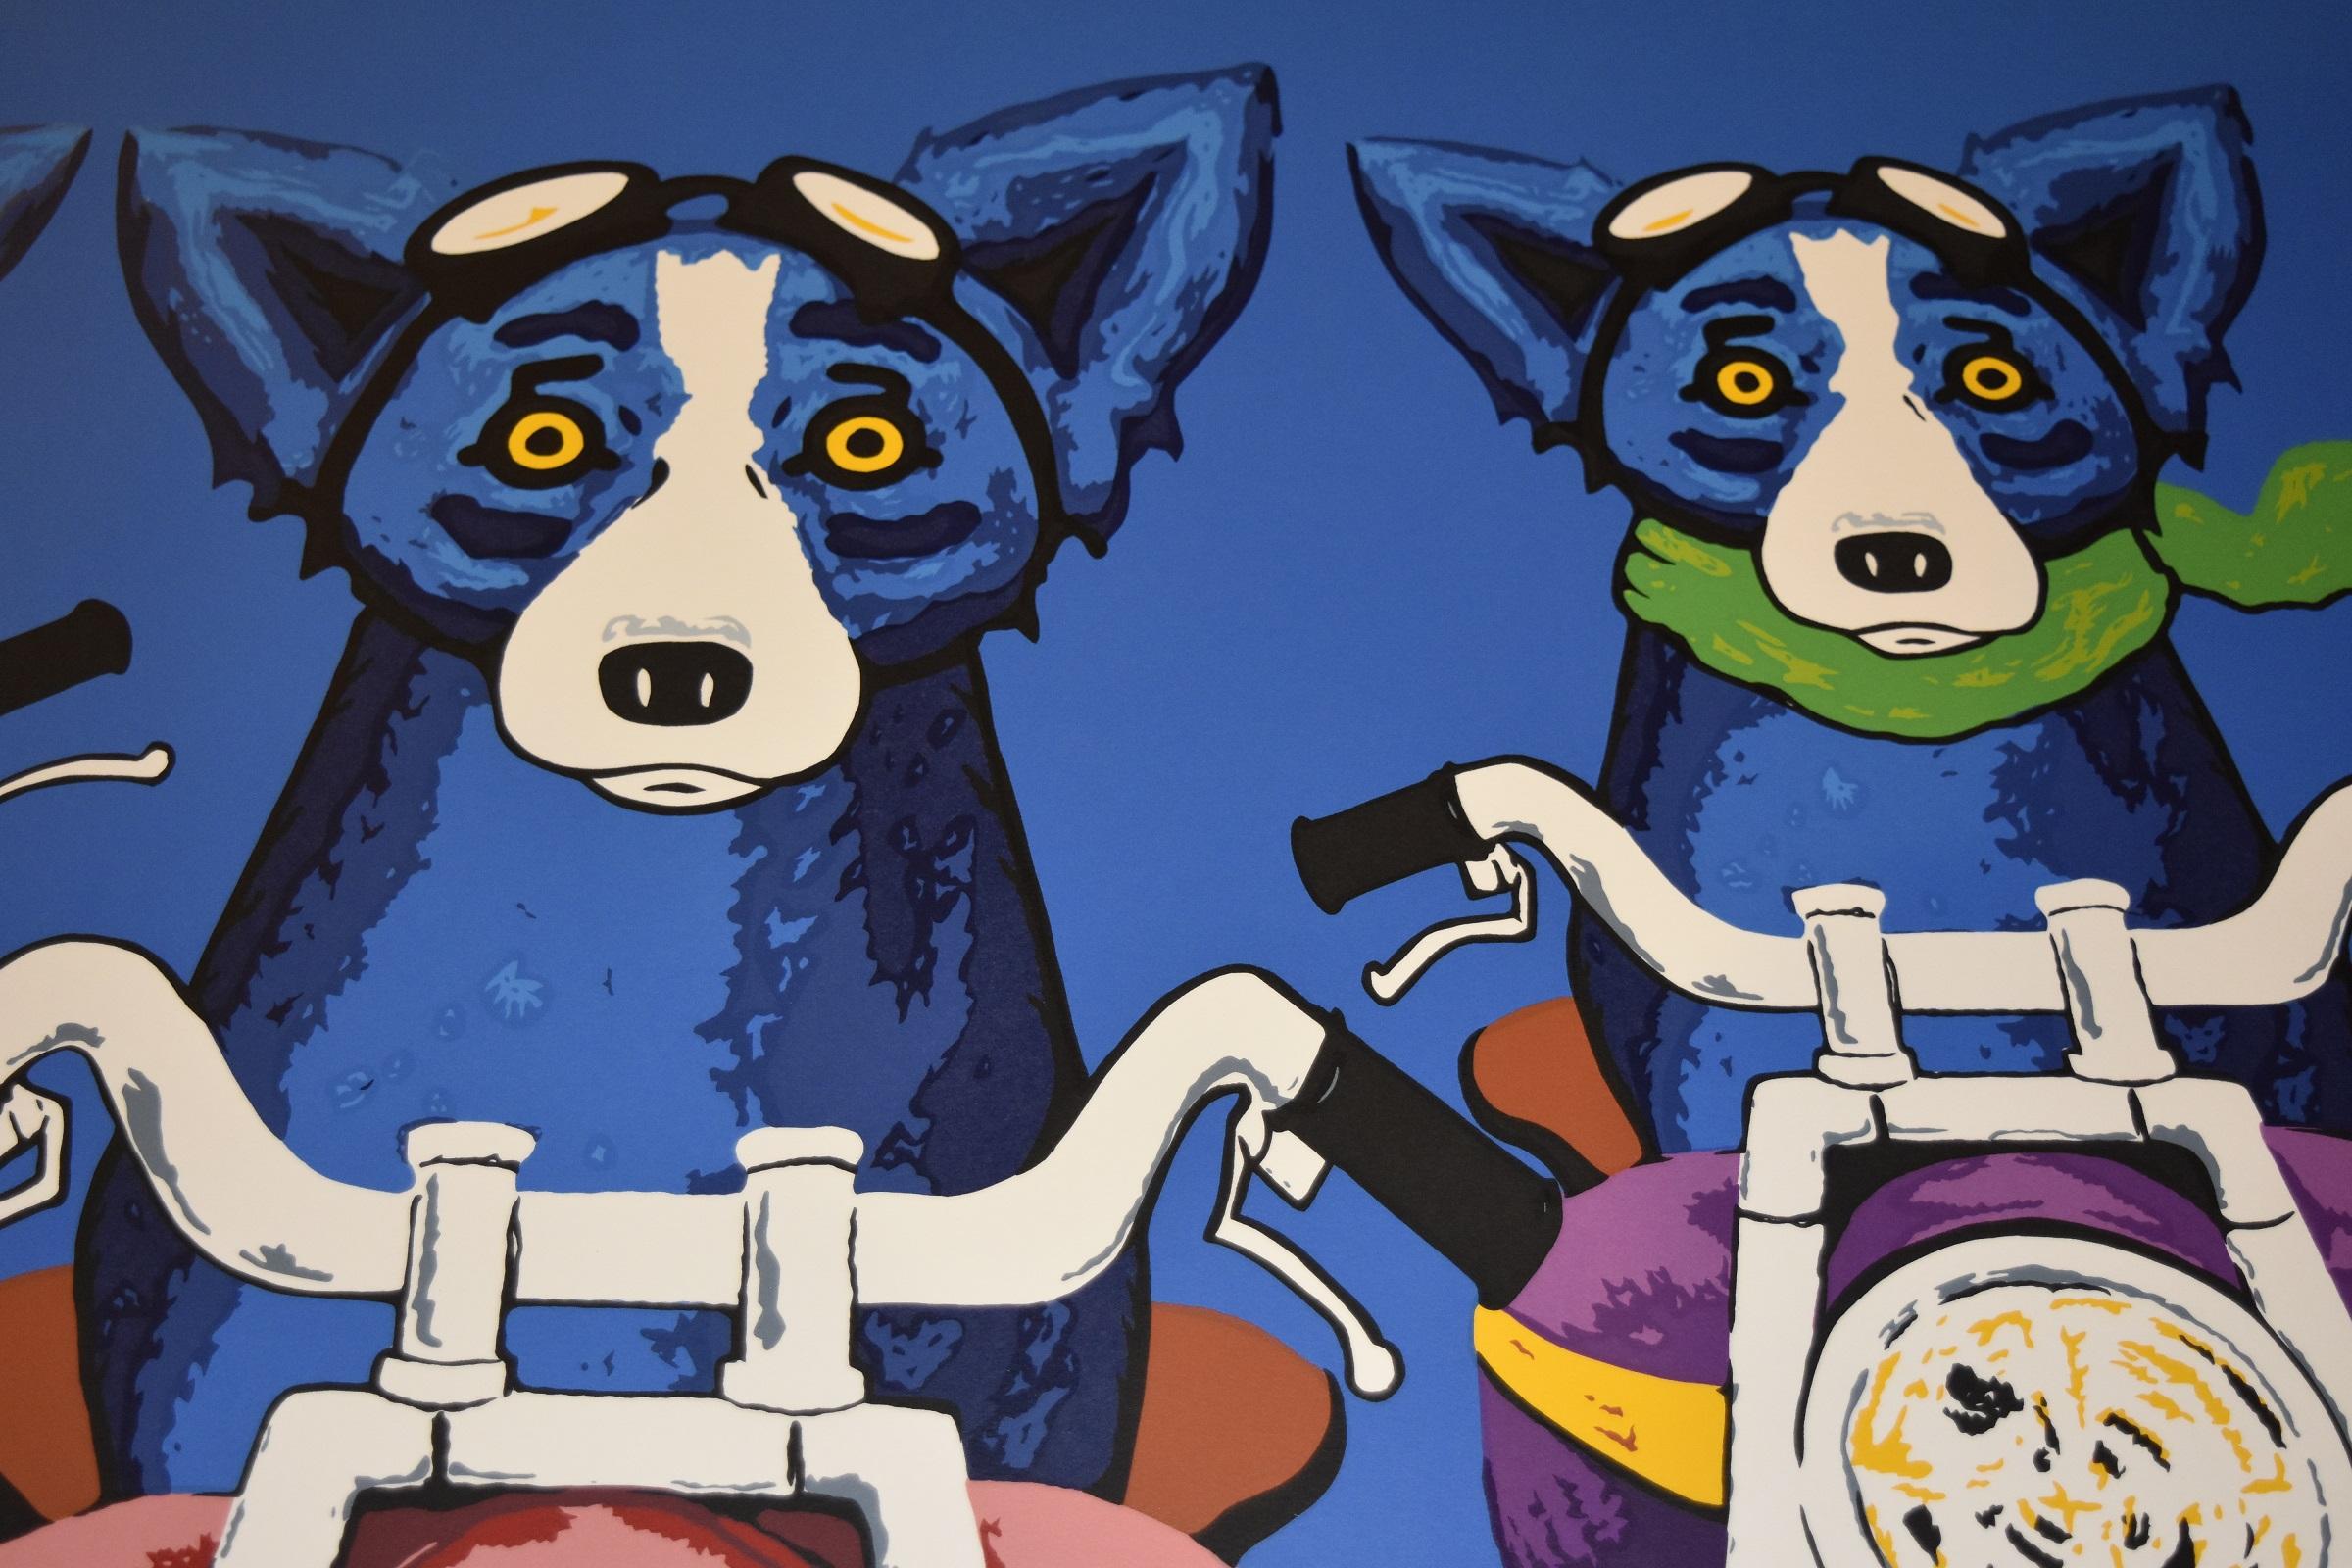 Dieses Blue Dog Werk besteht aus 4 Hunden, die auf Motorrädern vor einem blauen Hintergrund fahren. Drei der 4 Hunde tragen verschiedenfarbige Halstücher (gelb, rot, grün). Ein Hund hat kein Halstuch. Alle Hunde sind auf verschiedenfarbigen